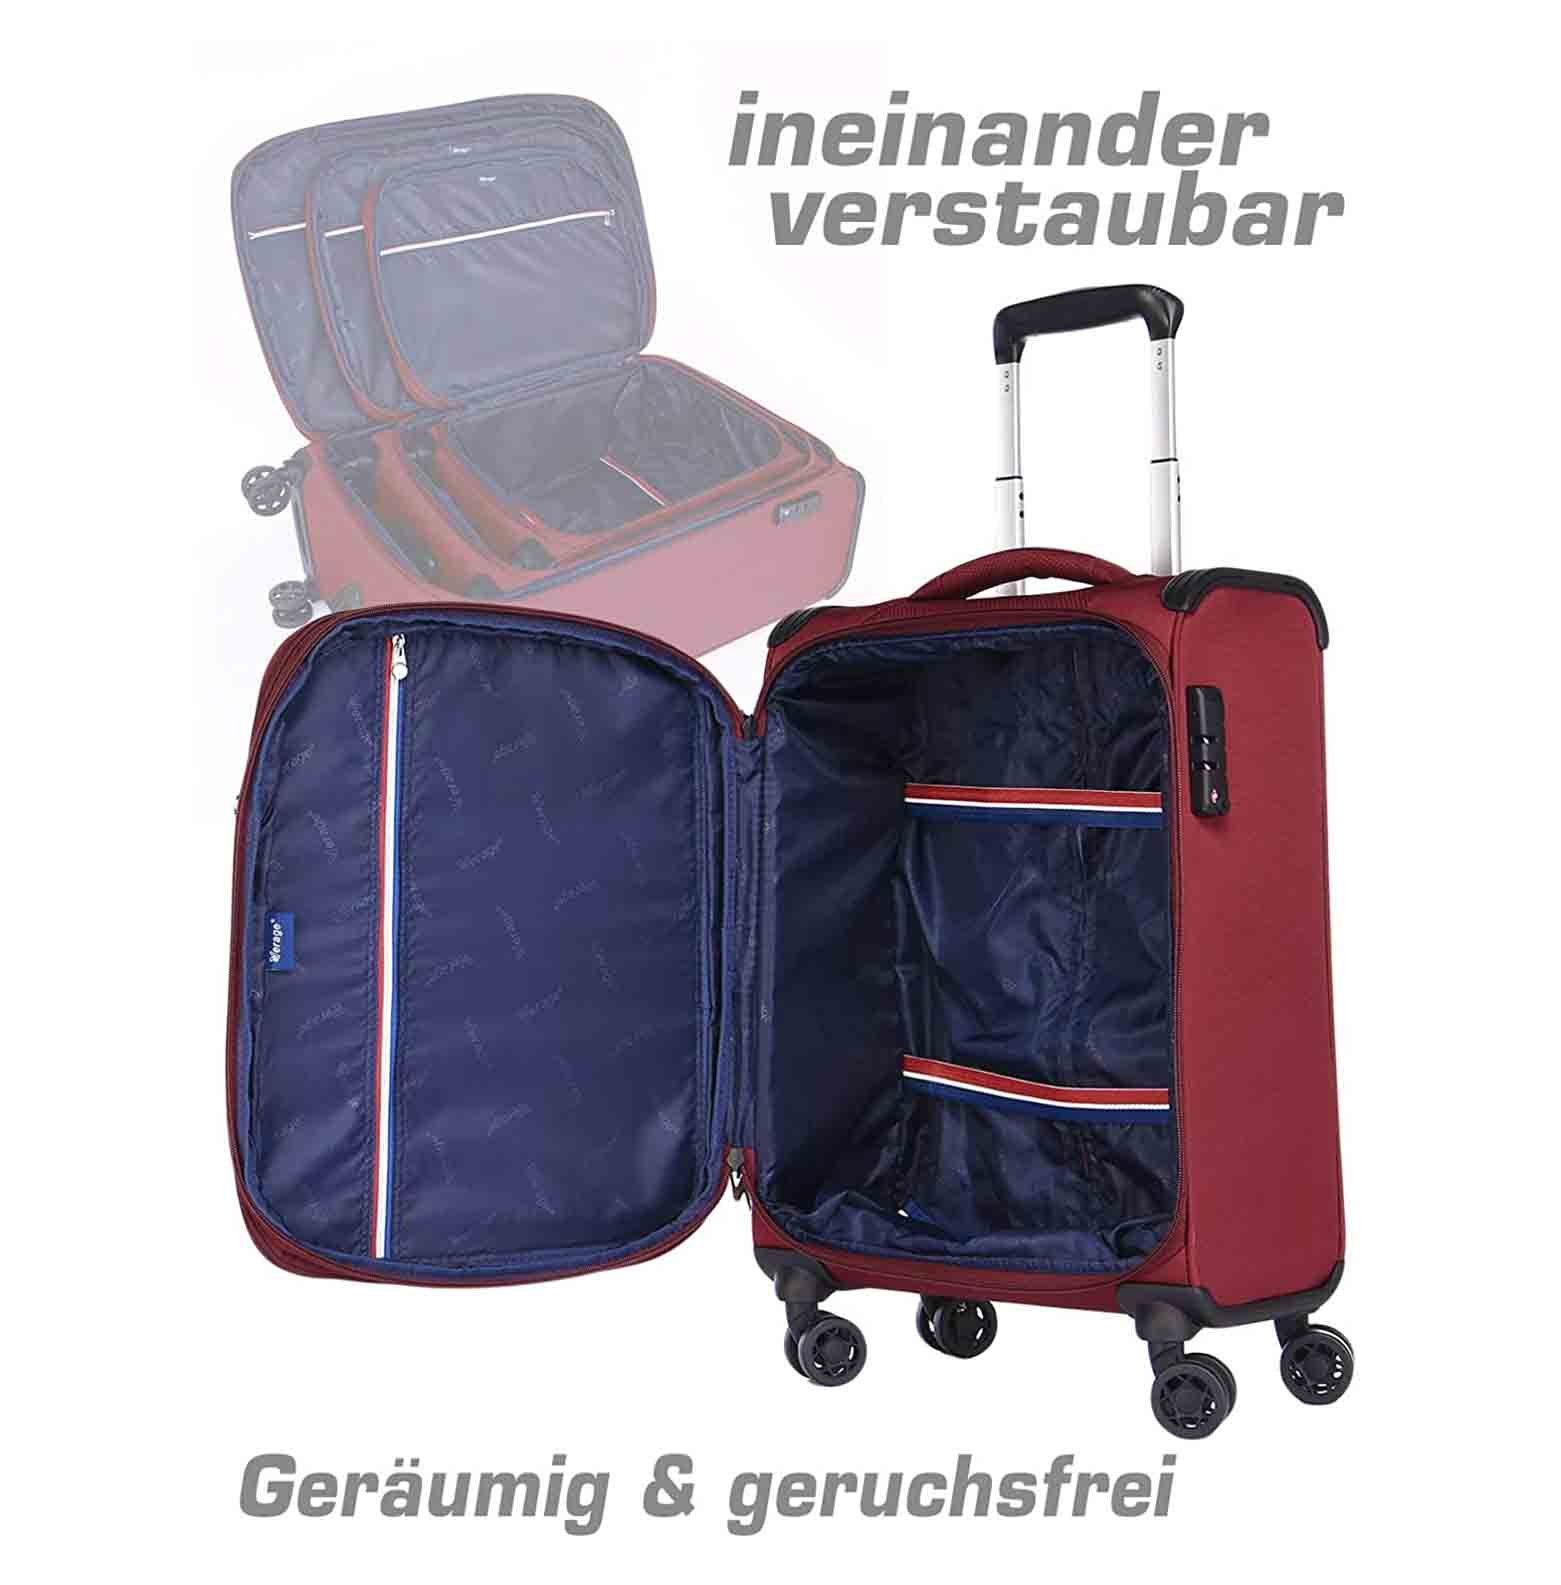 Reisekoffer, Weichgepäck-Trolley erweiterbar, 4 Weichschale, Toledo Verage Handgepäck-Koffer Rot Rollen, TSA-Schloss,